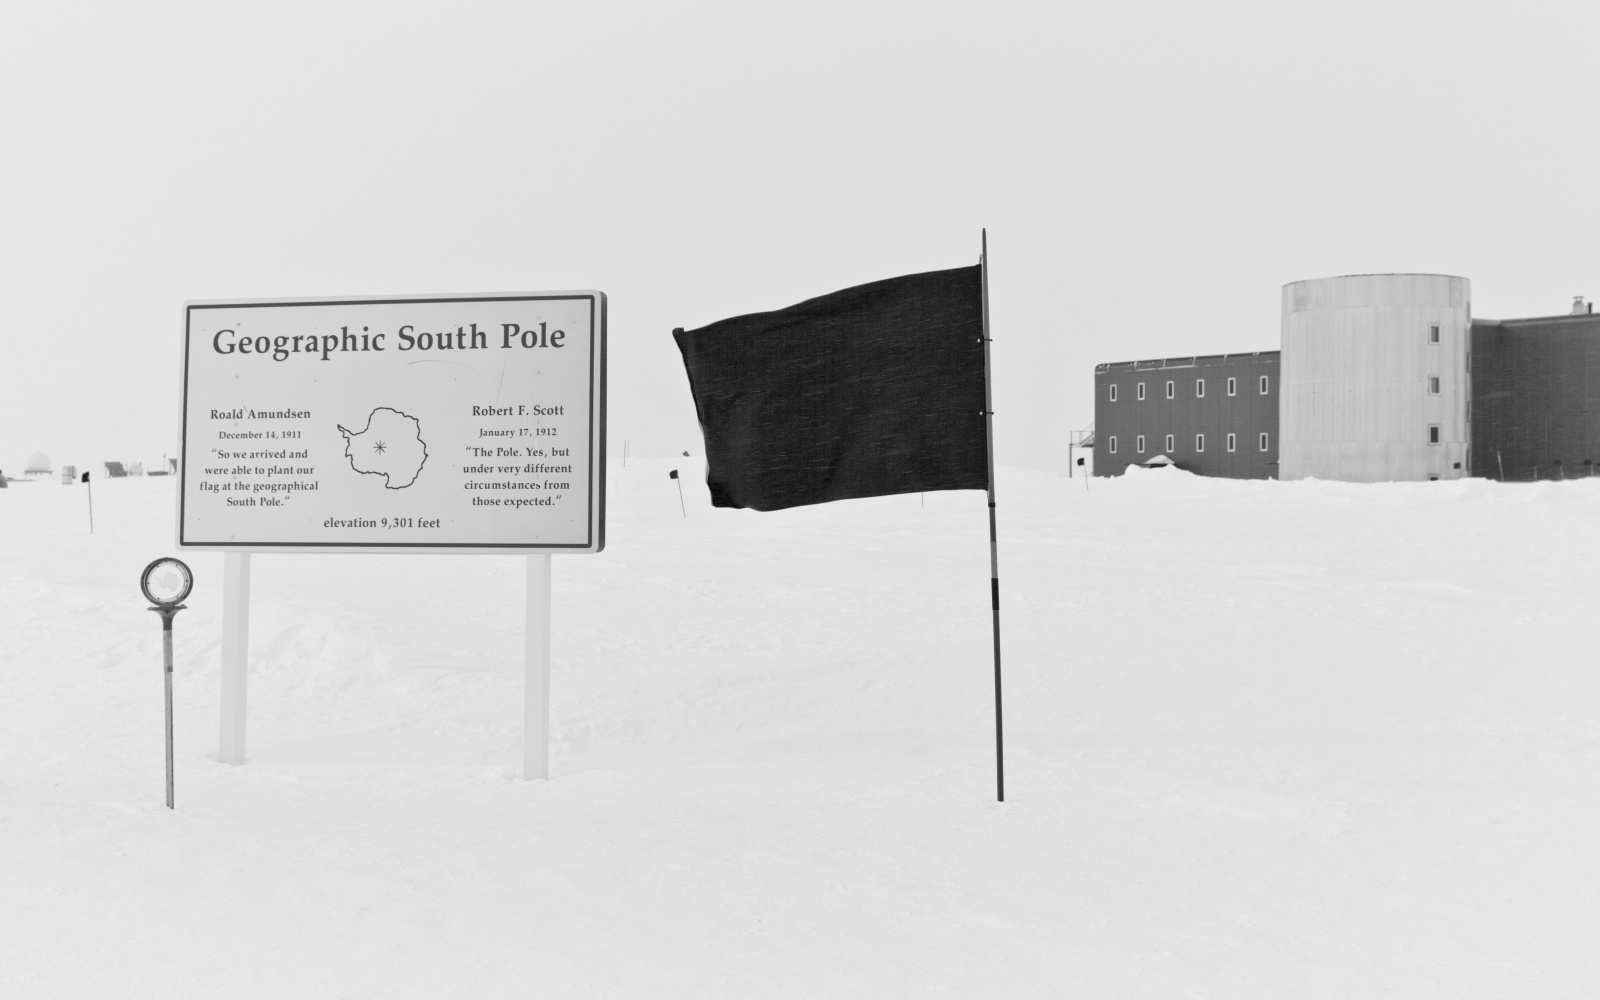 Das Bild zeit eine schwarze Flagge im Schnee neben einer Infotafel über den Südpol und einem Haus, was im Hintergrund zu sehen ist.